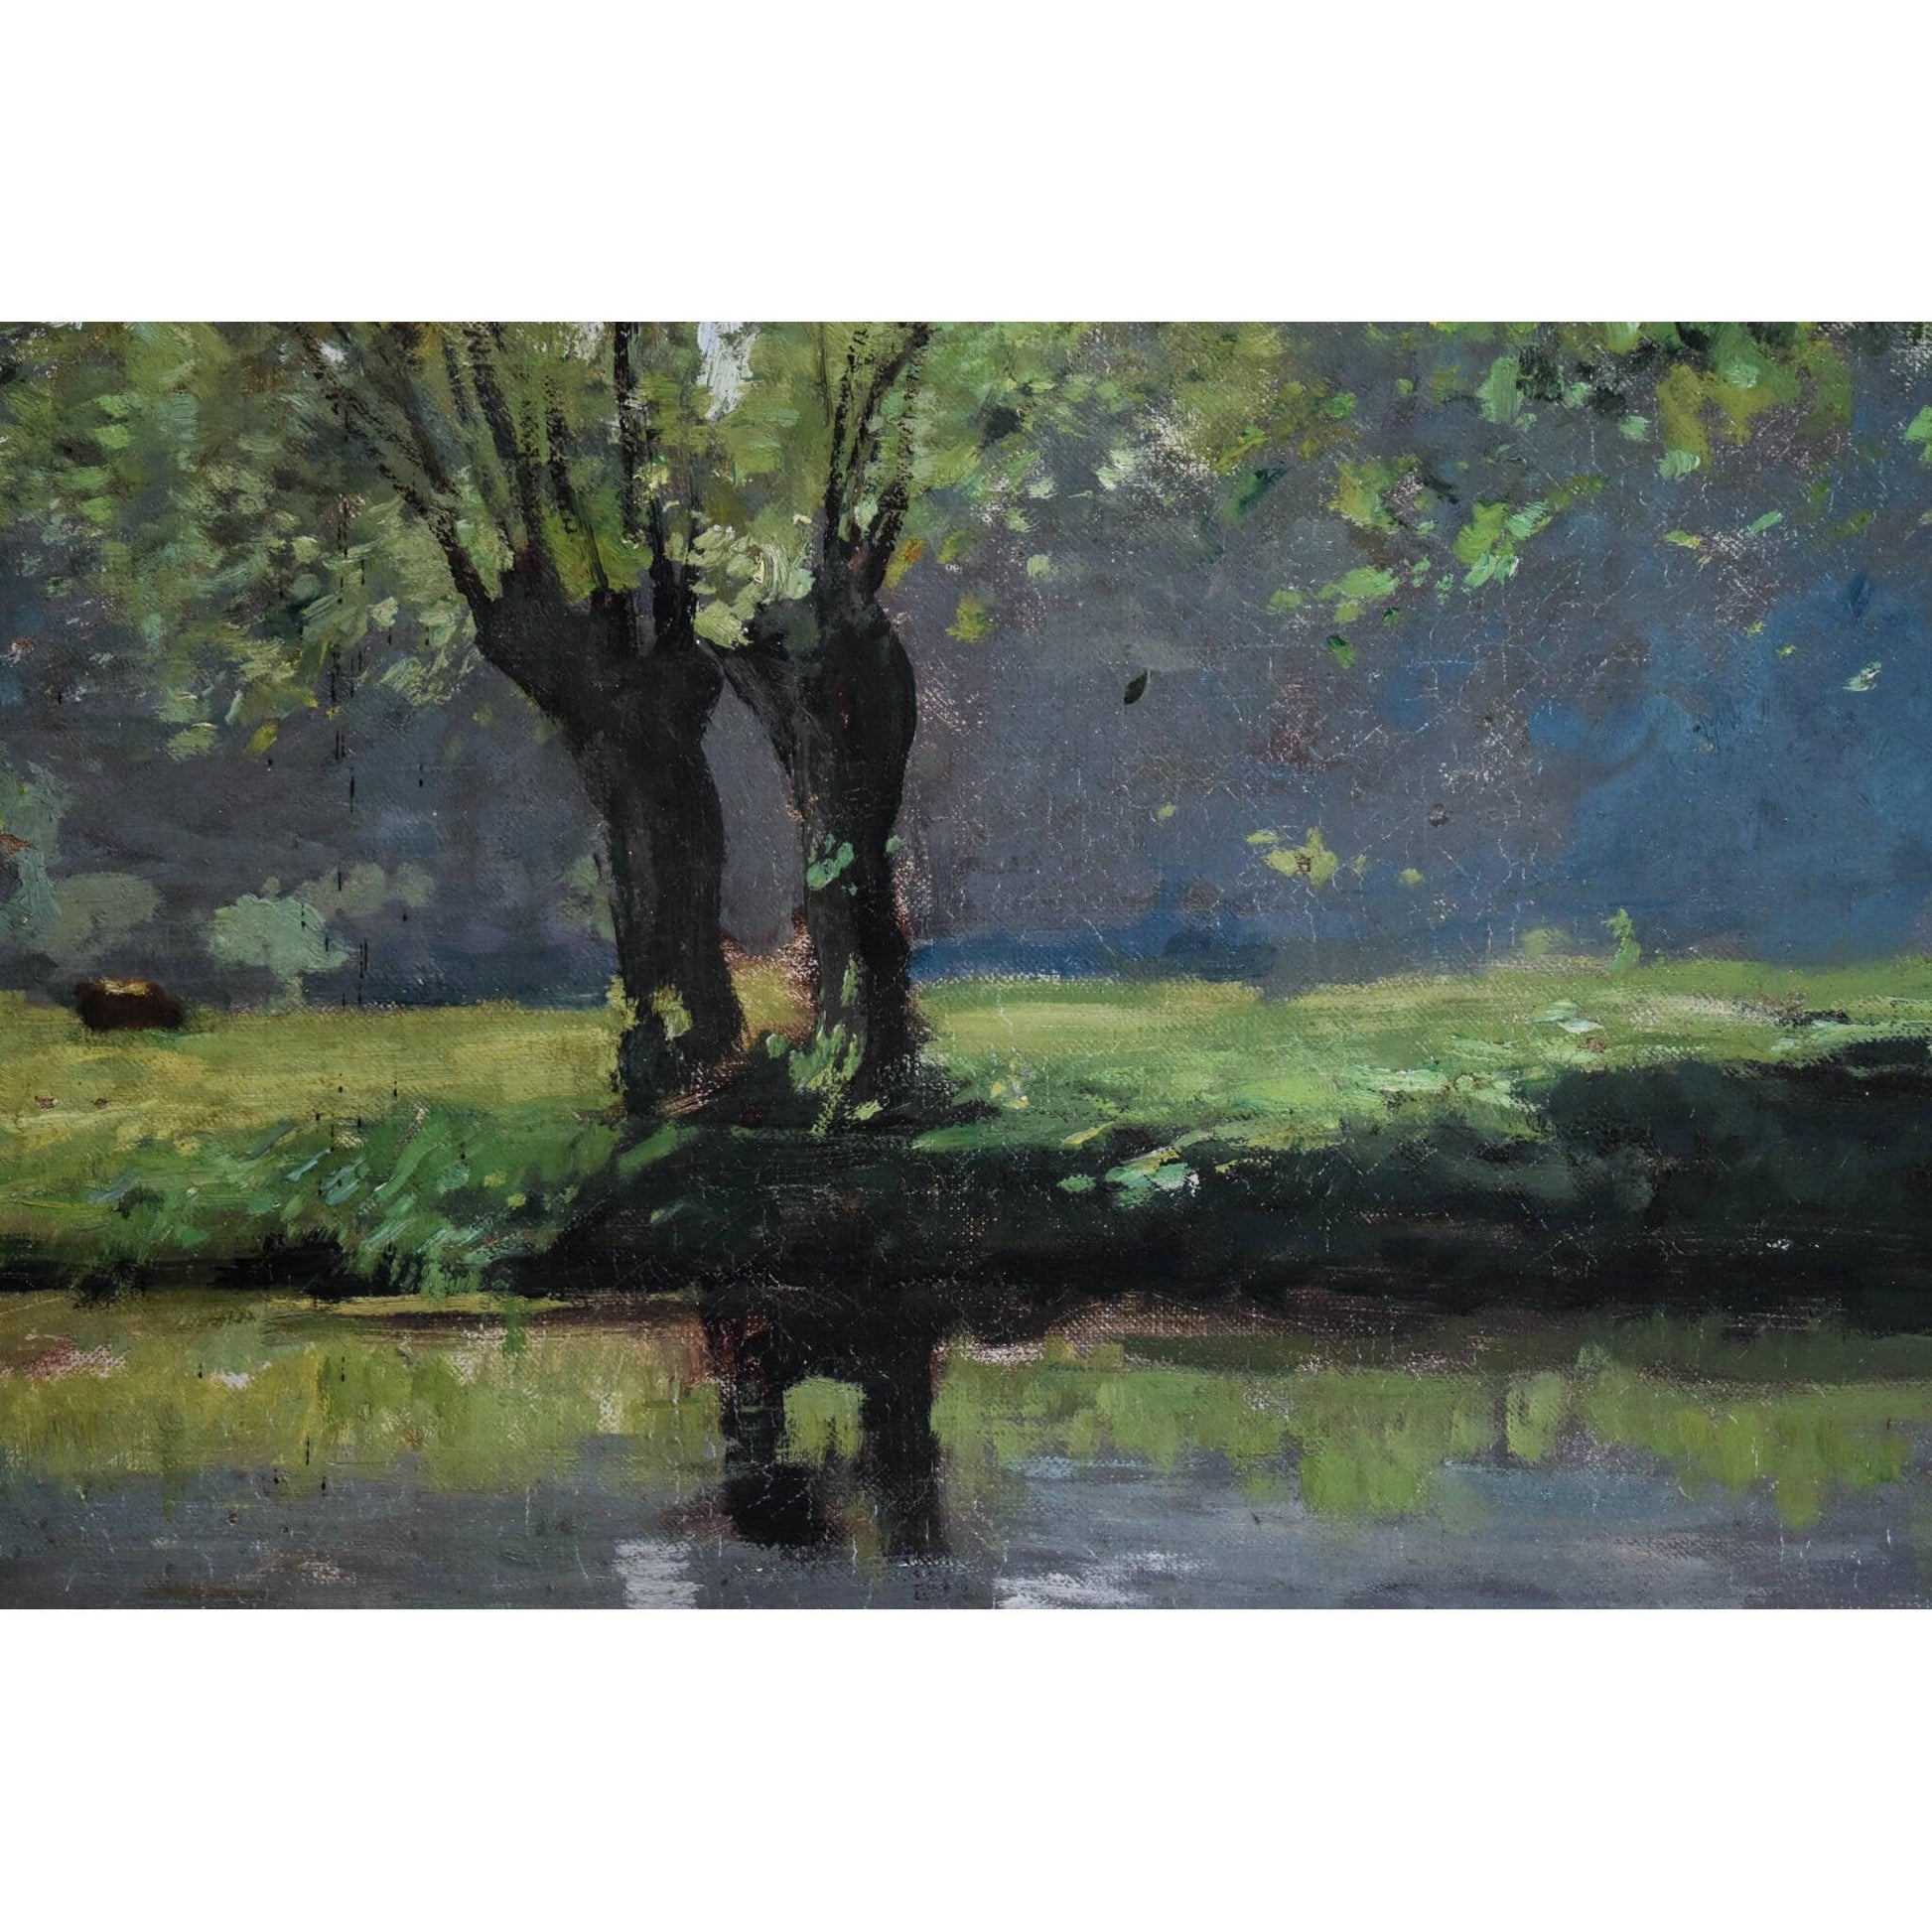 Antique landscape oil painting river impressionist art circa 1900 by Pierre-Paul Detenre for sale at Winckelmann Gallery